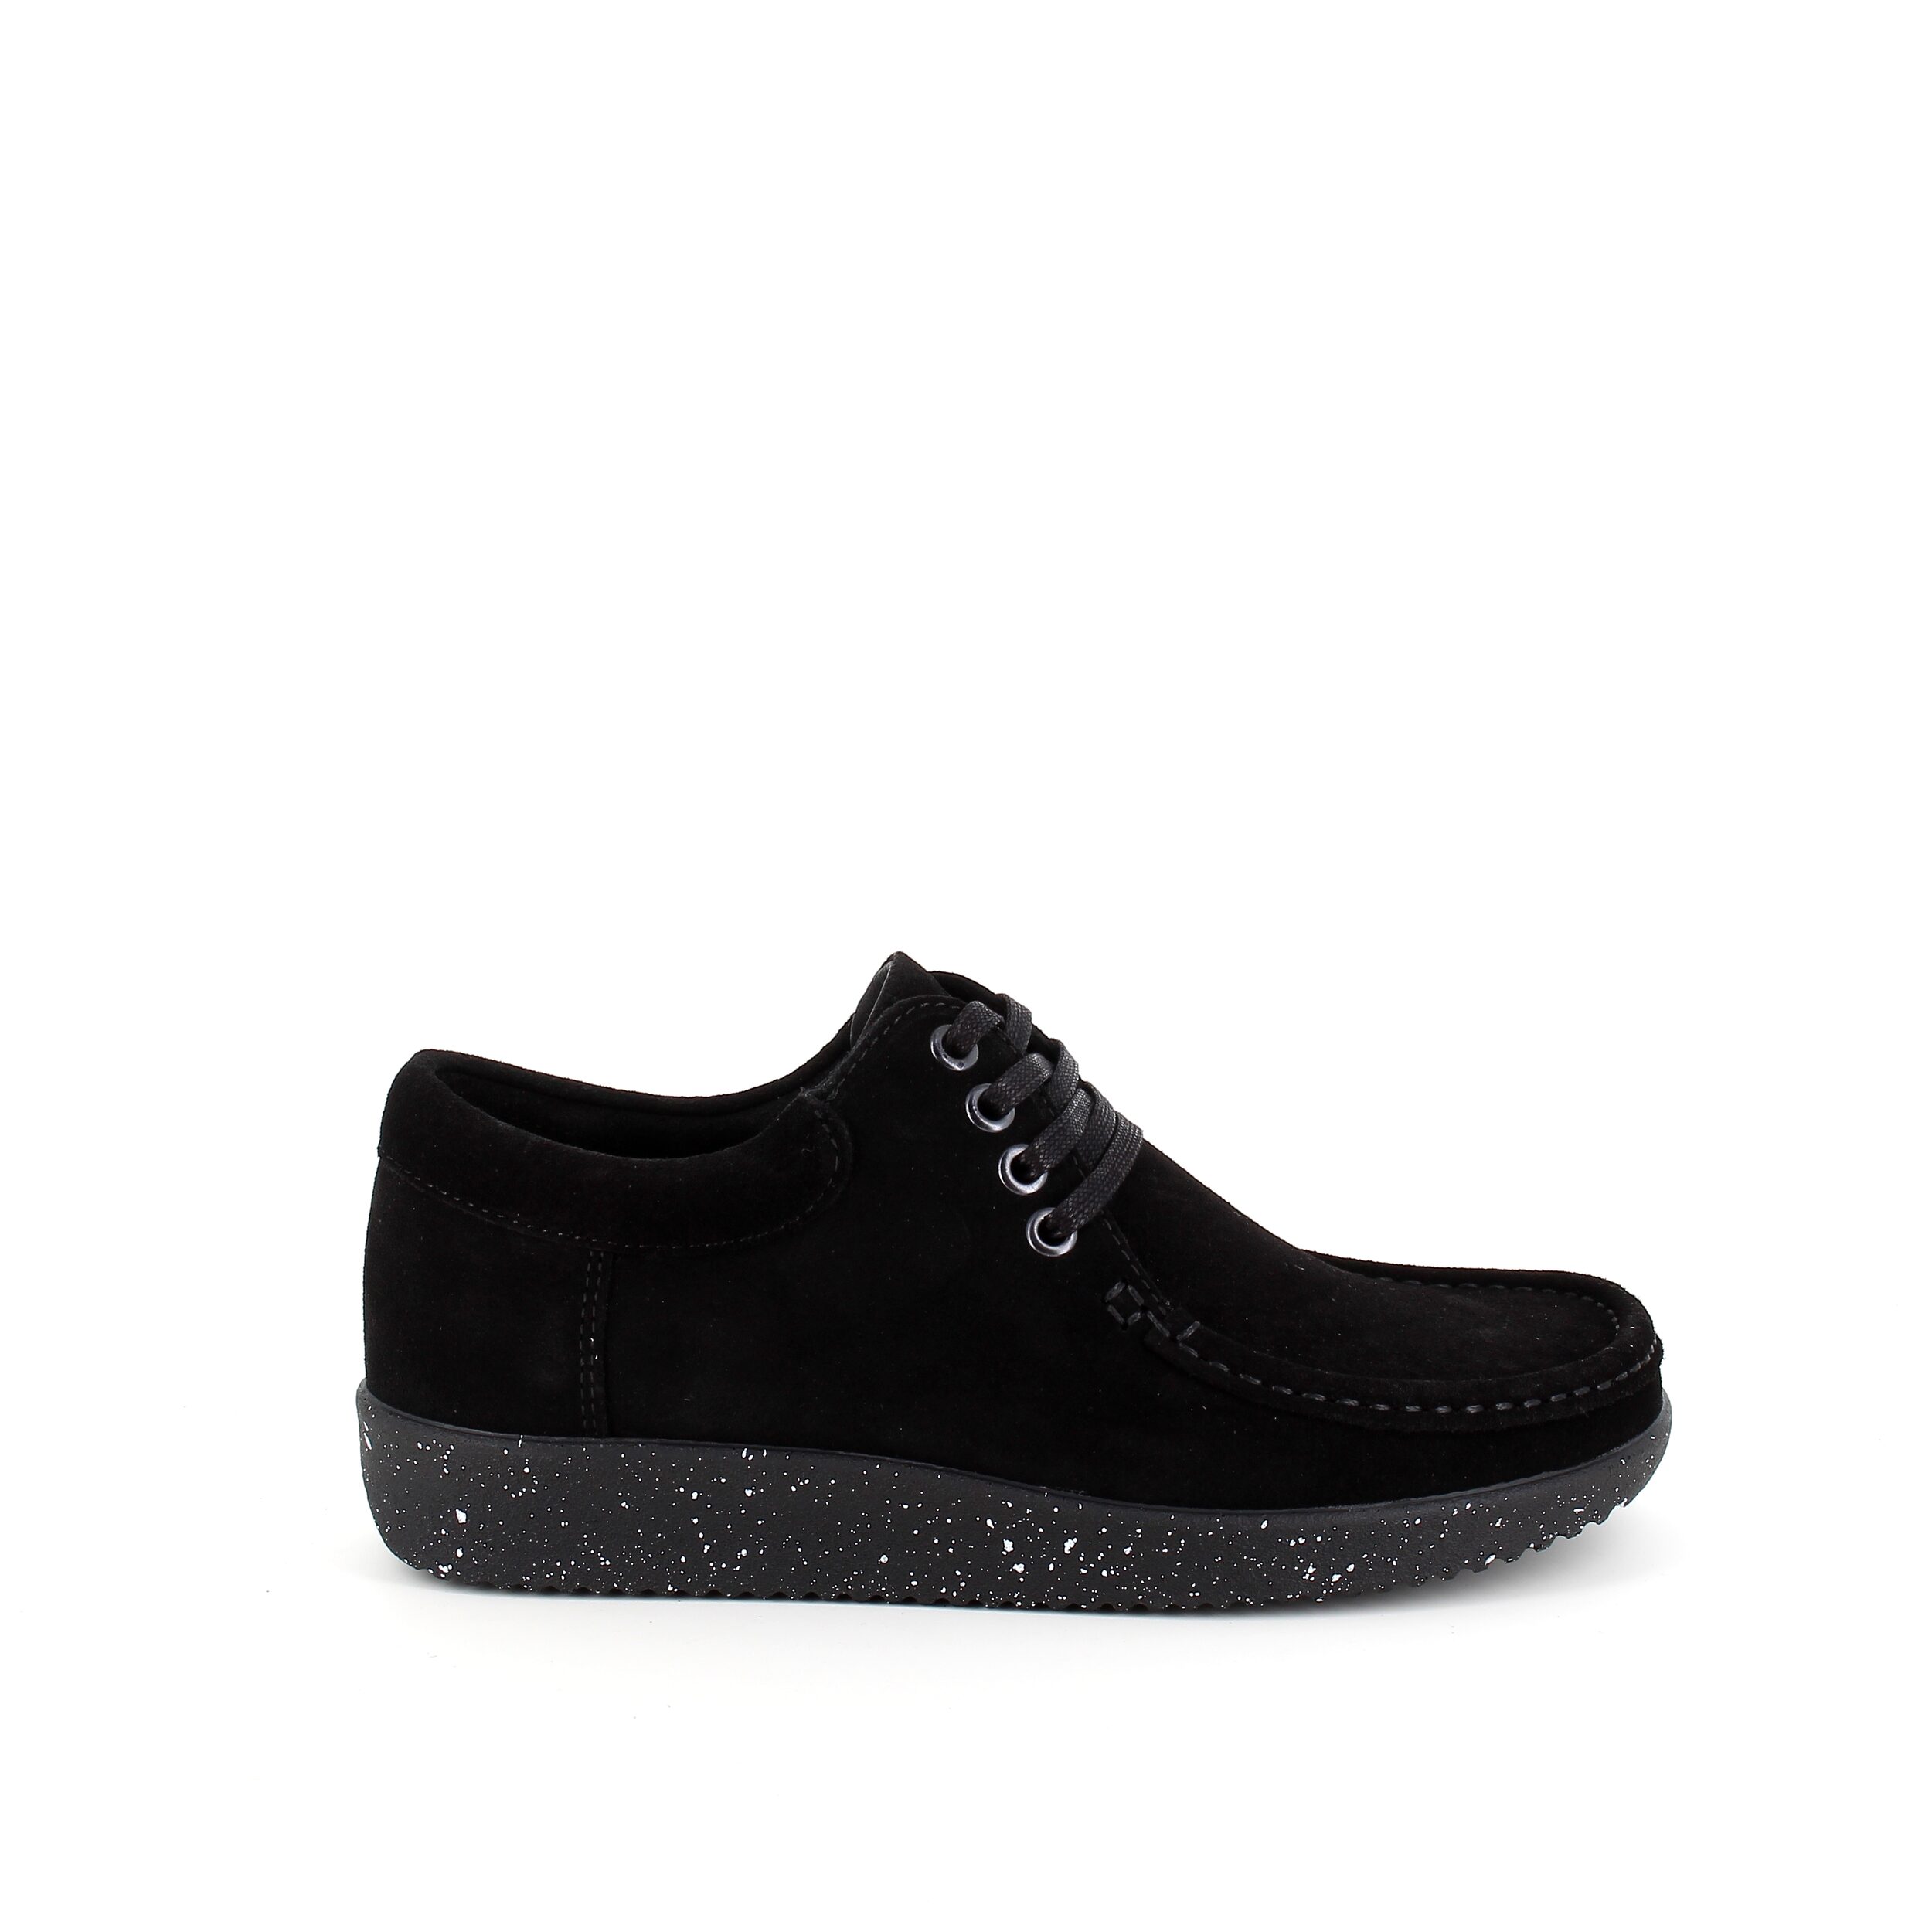 Se Nature sko i sort ruskind med hvide nister i sålen - 37 hos Sygeplejebutikken.dk